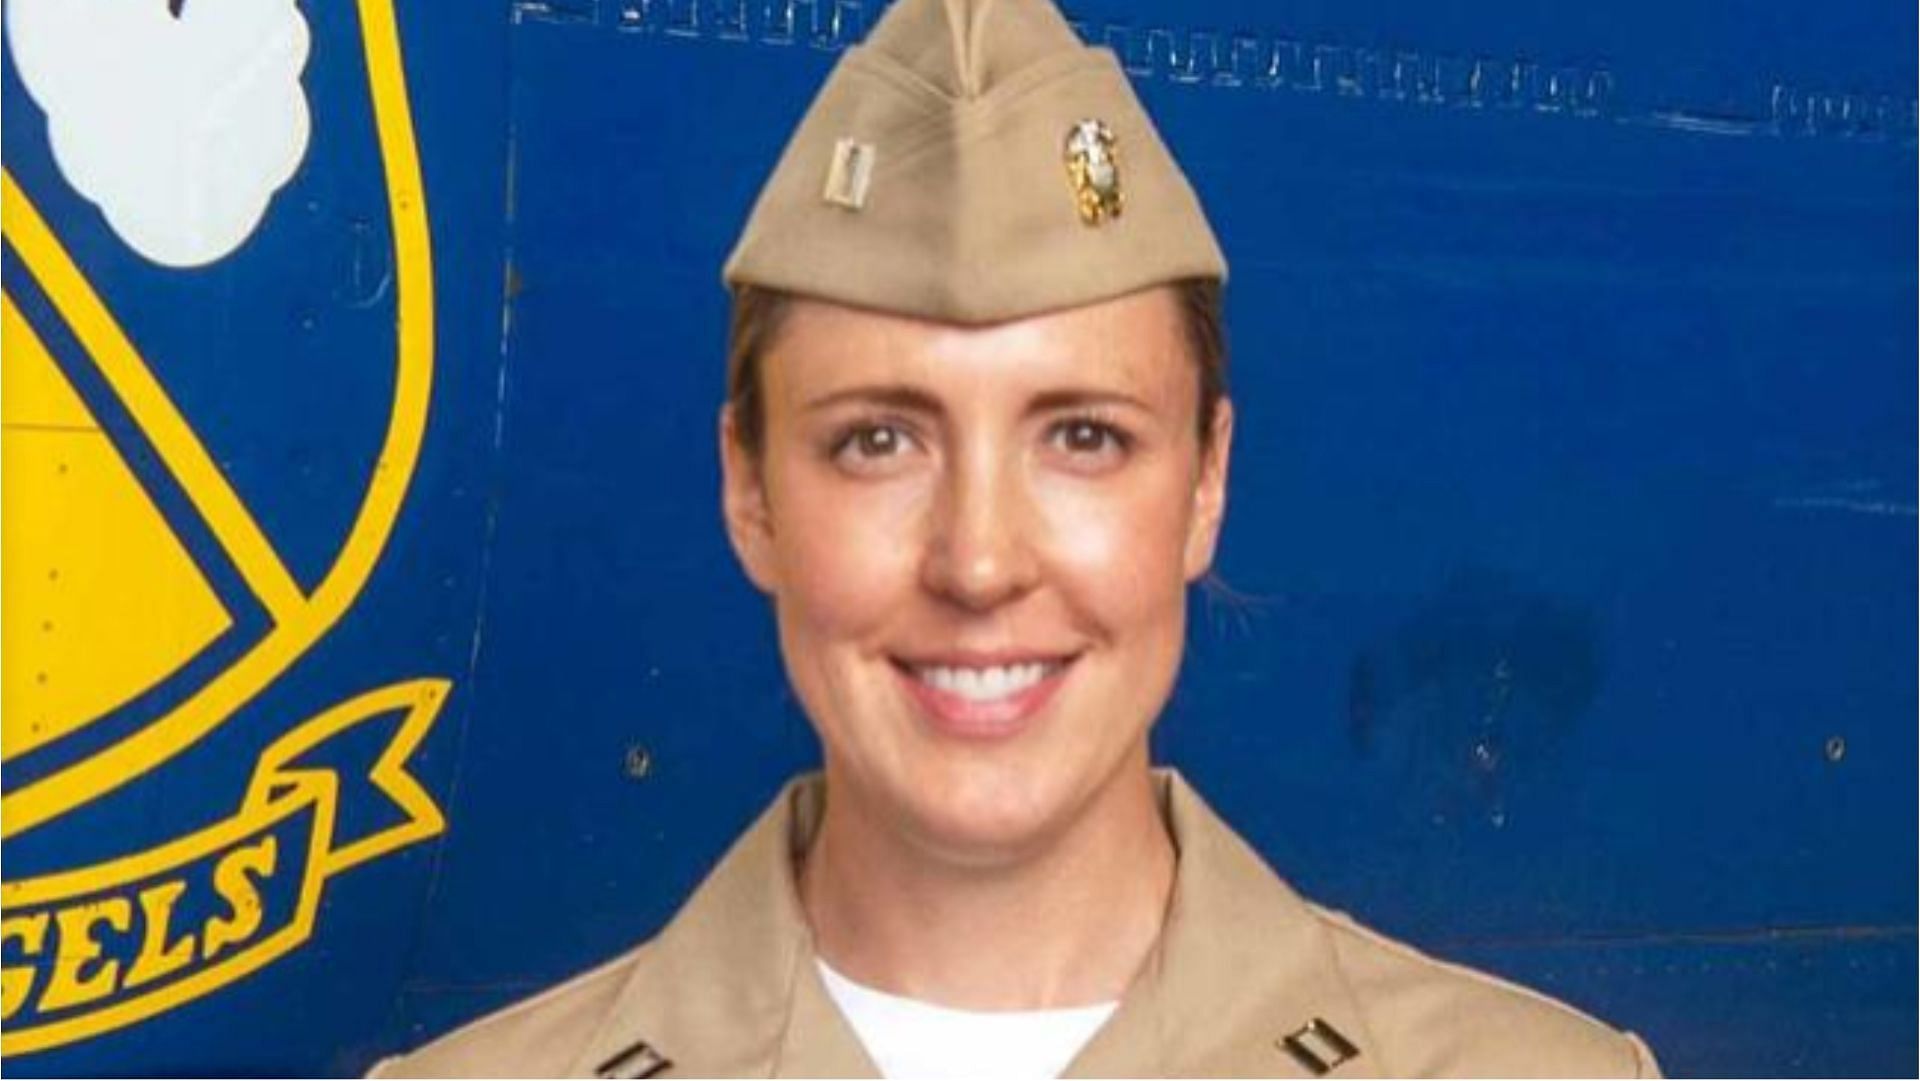 Lt. Amanda Lee is one of the six new members of the US Navy&#039;s elite team, Blue Angels (Image via @Tuckerpete/Twitter)